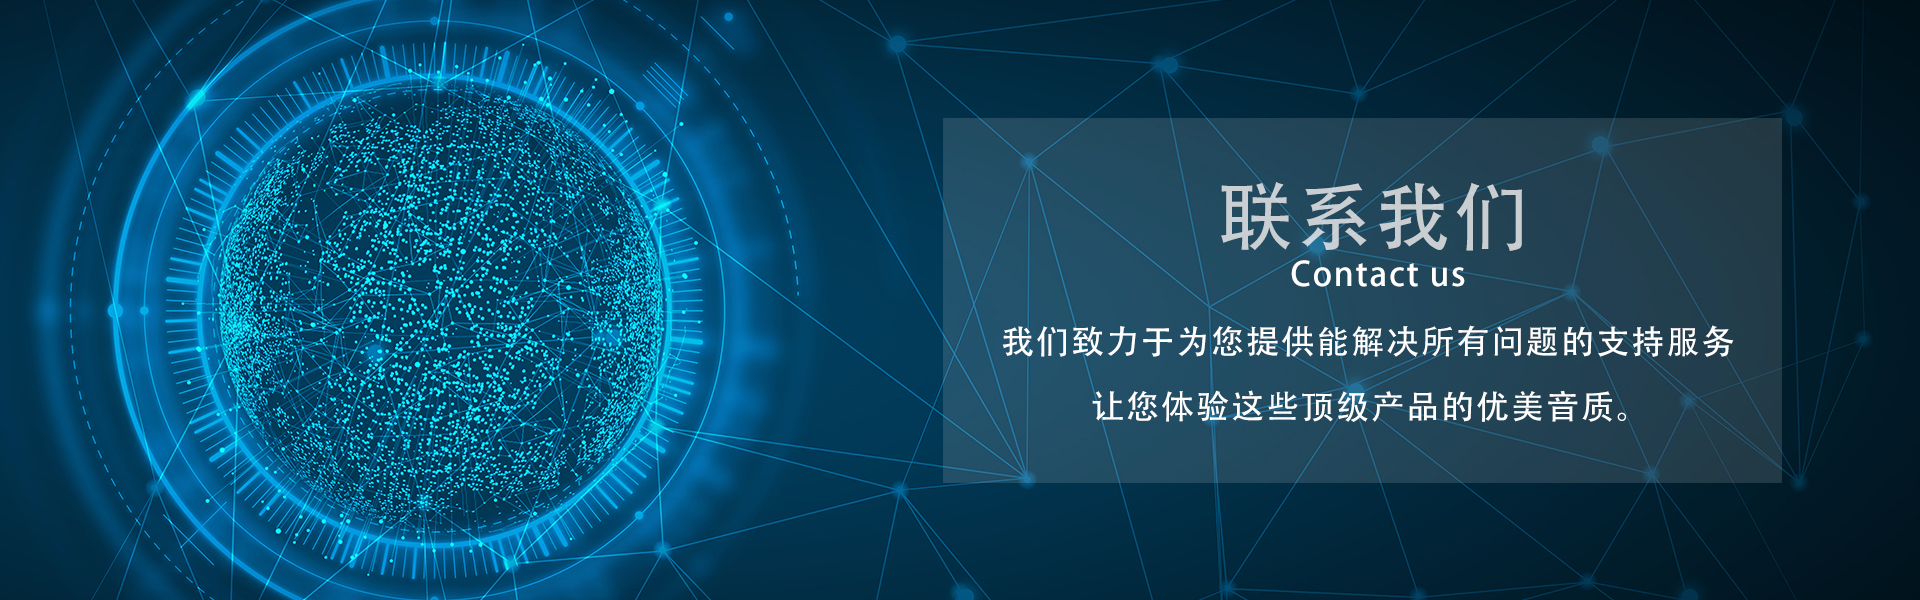 联系方式_广州市天谱电器有限公司万利达品牌网站